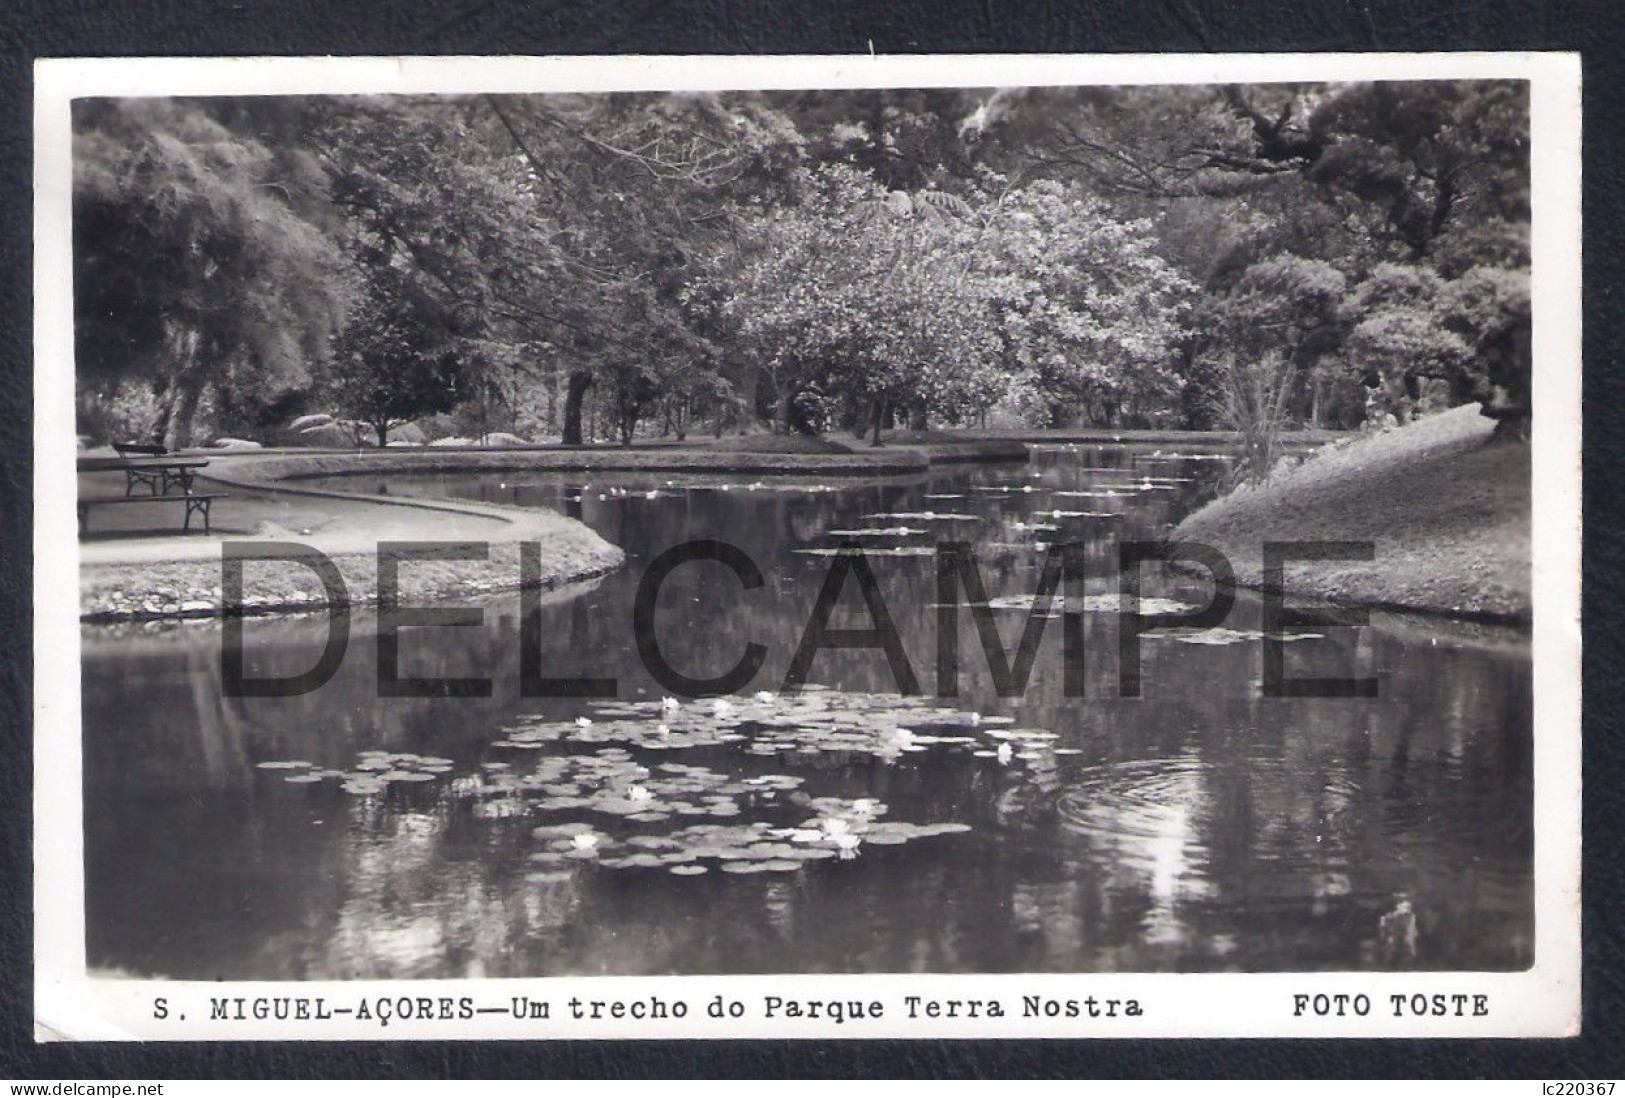 REAL PHOTO POSTCARD PORTUGAL AÇORES S. MIGUEL - UM TRECHO DO PARQUE TERRA NOSTRA - FOTO TOSTE - 1950'S - Açores